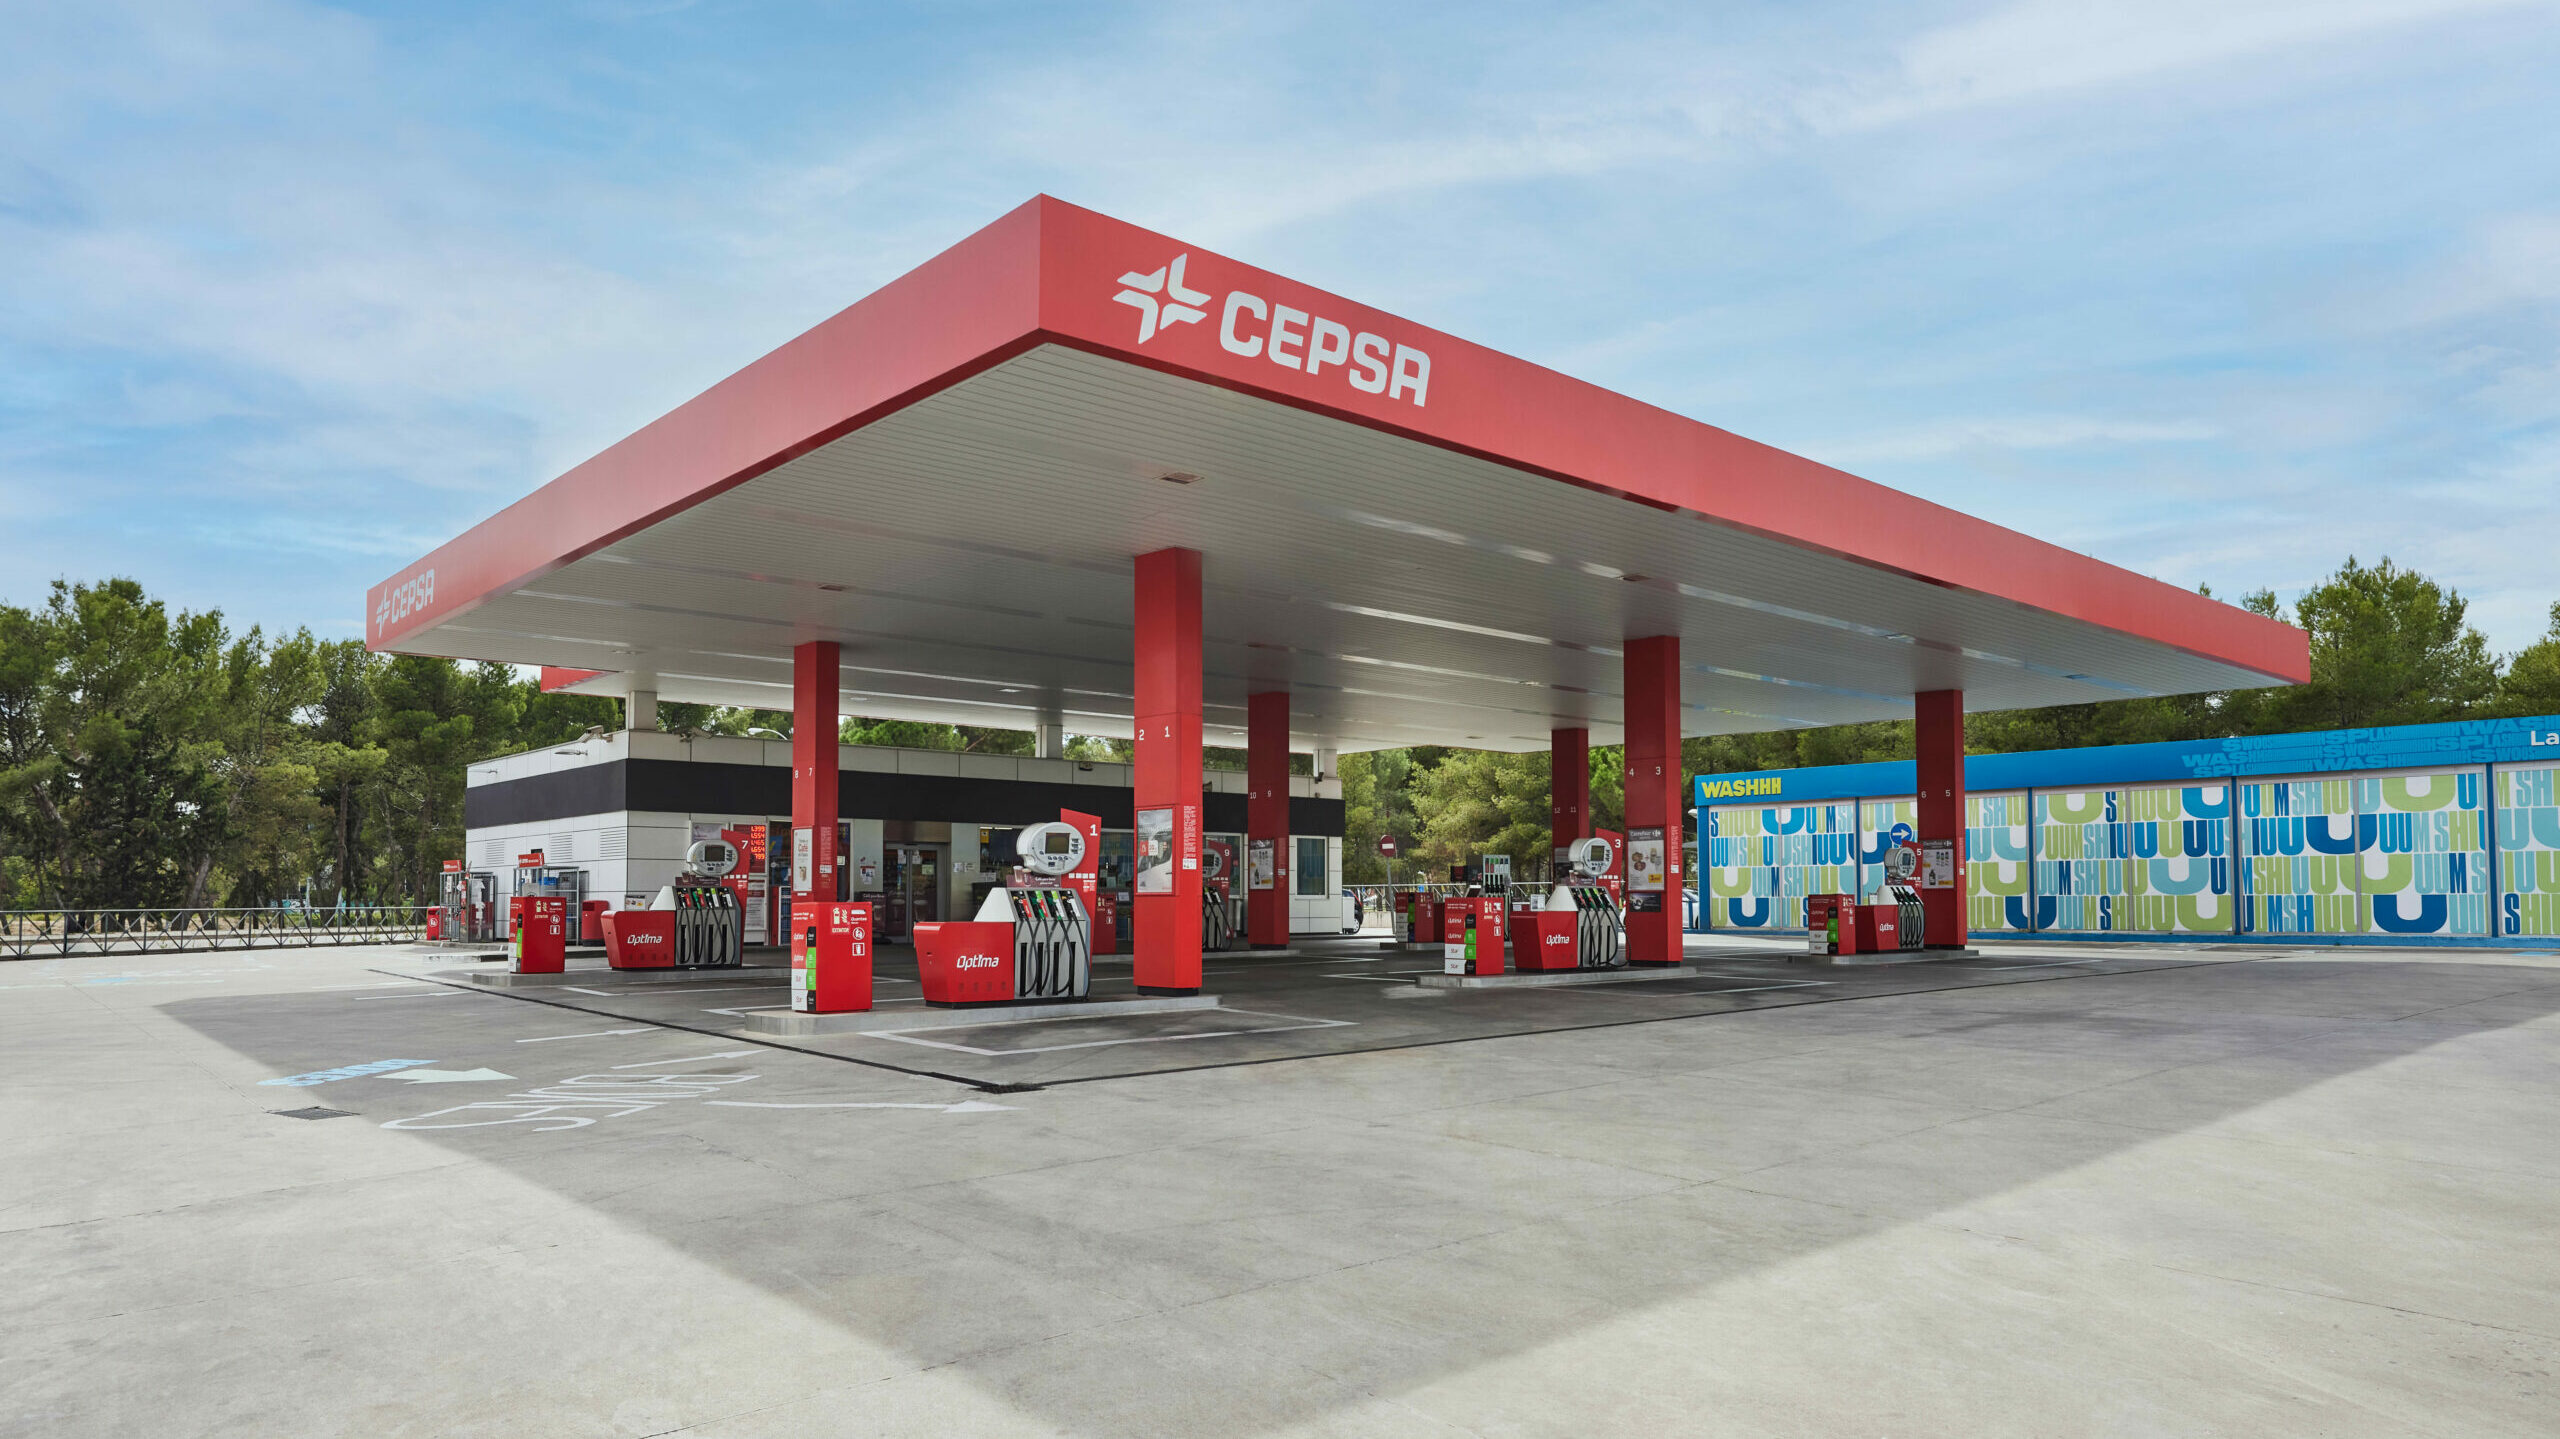 Cepsa entra en la batalla de Repsol y ofrece una rebaja de 10 céntimos el litro